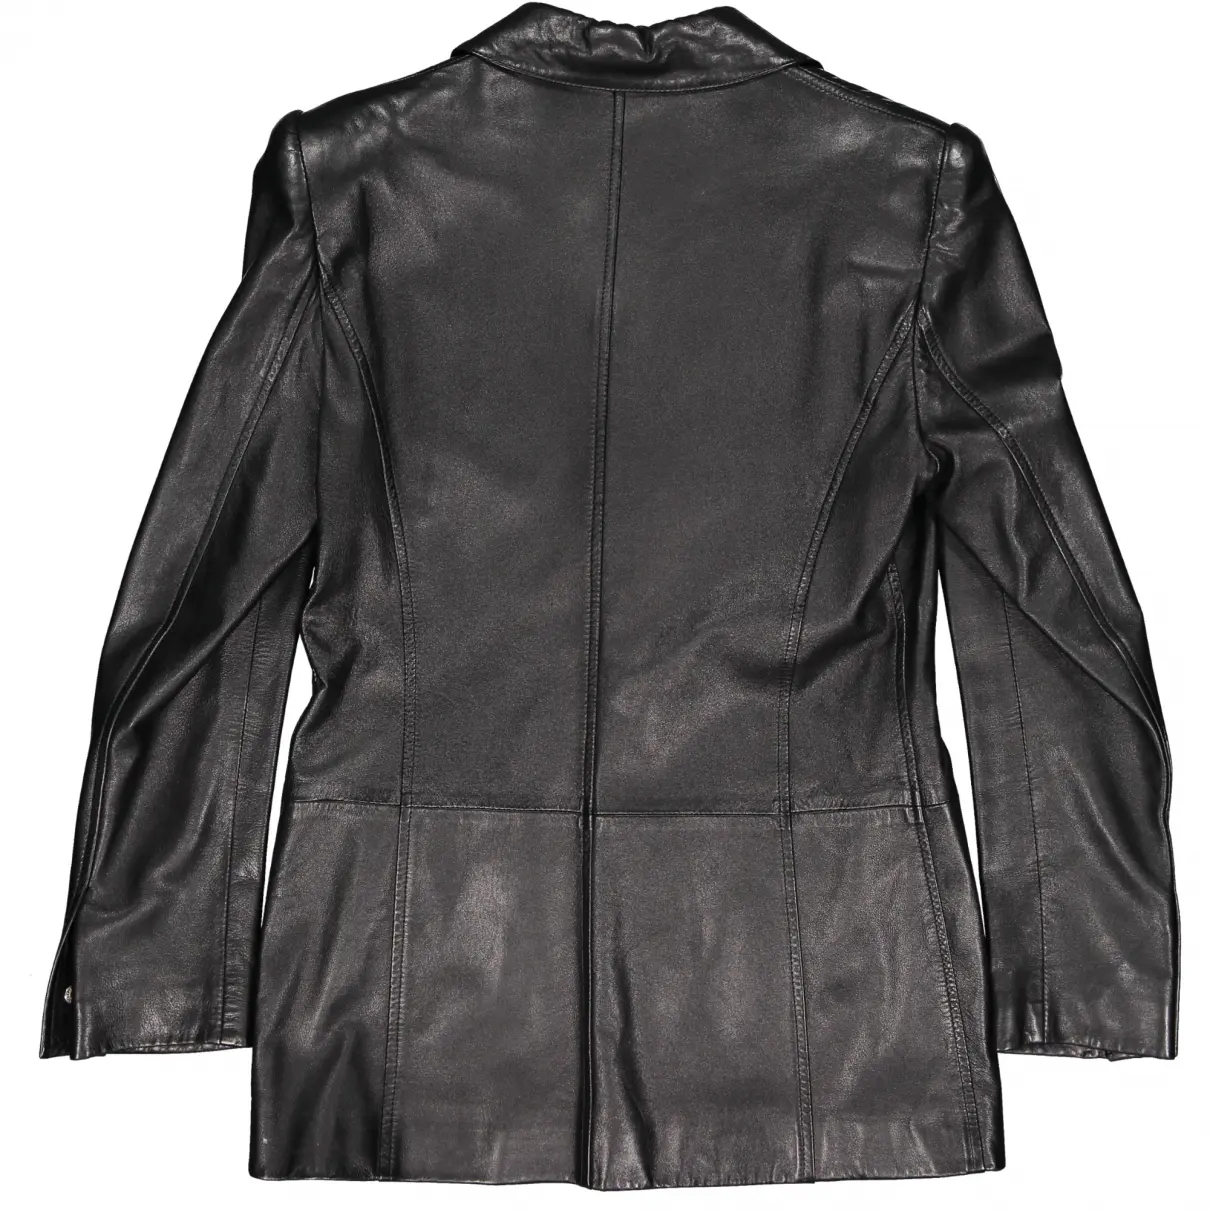 Rena Lange Leather jacket for sale